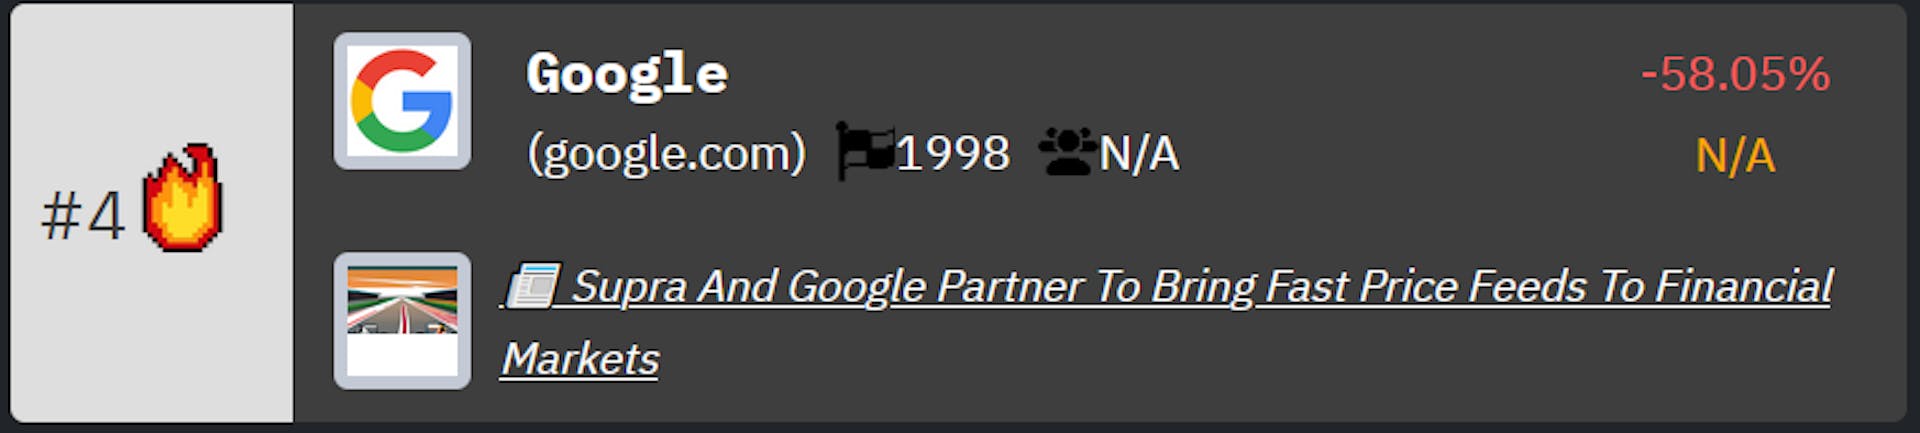 Google rank on HackerNoon's Tech Company Rankings